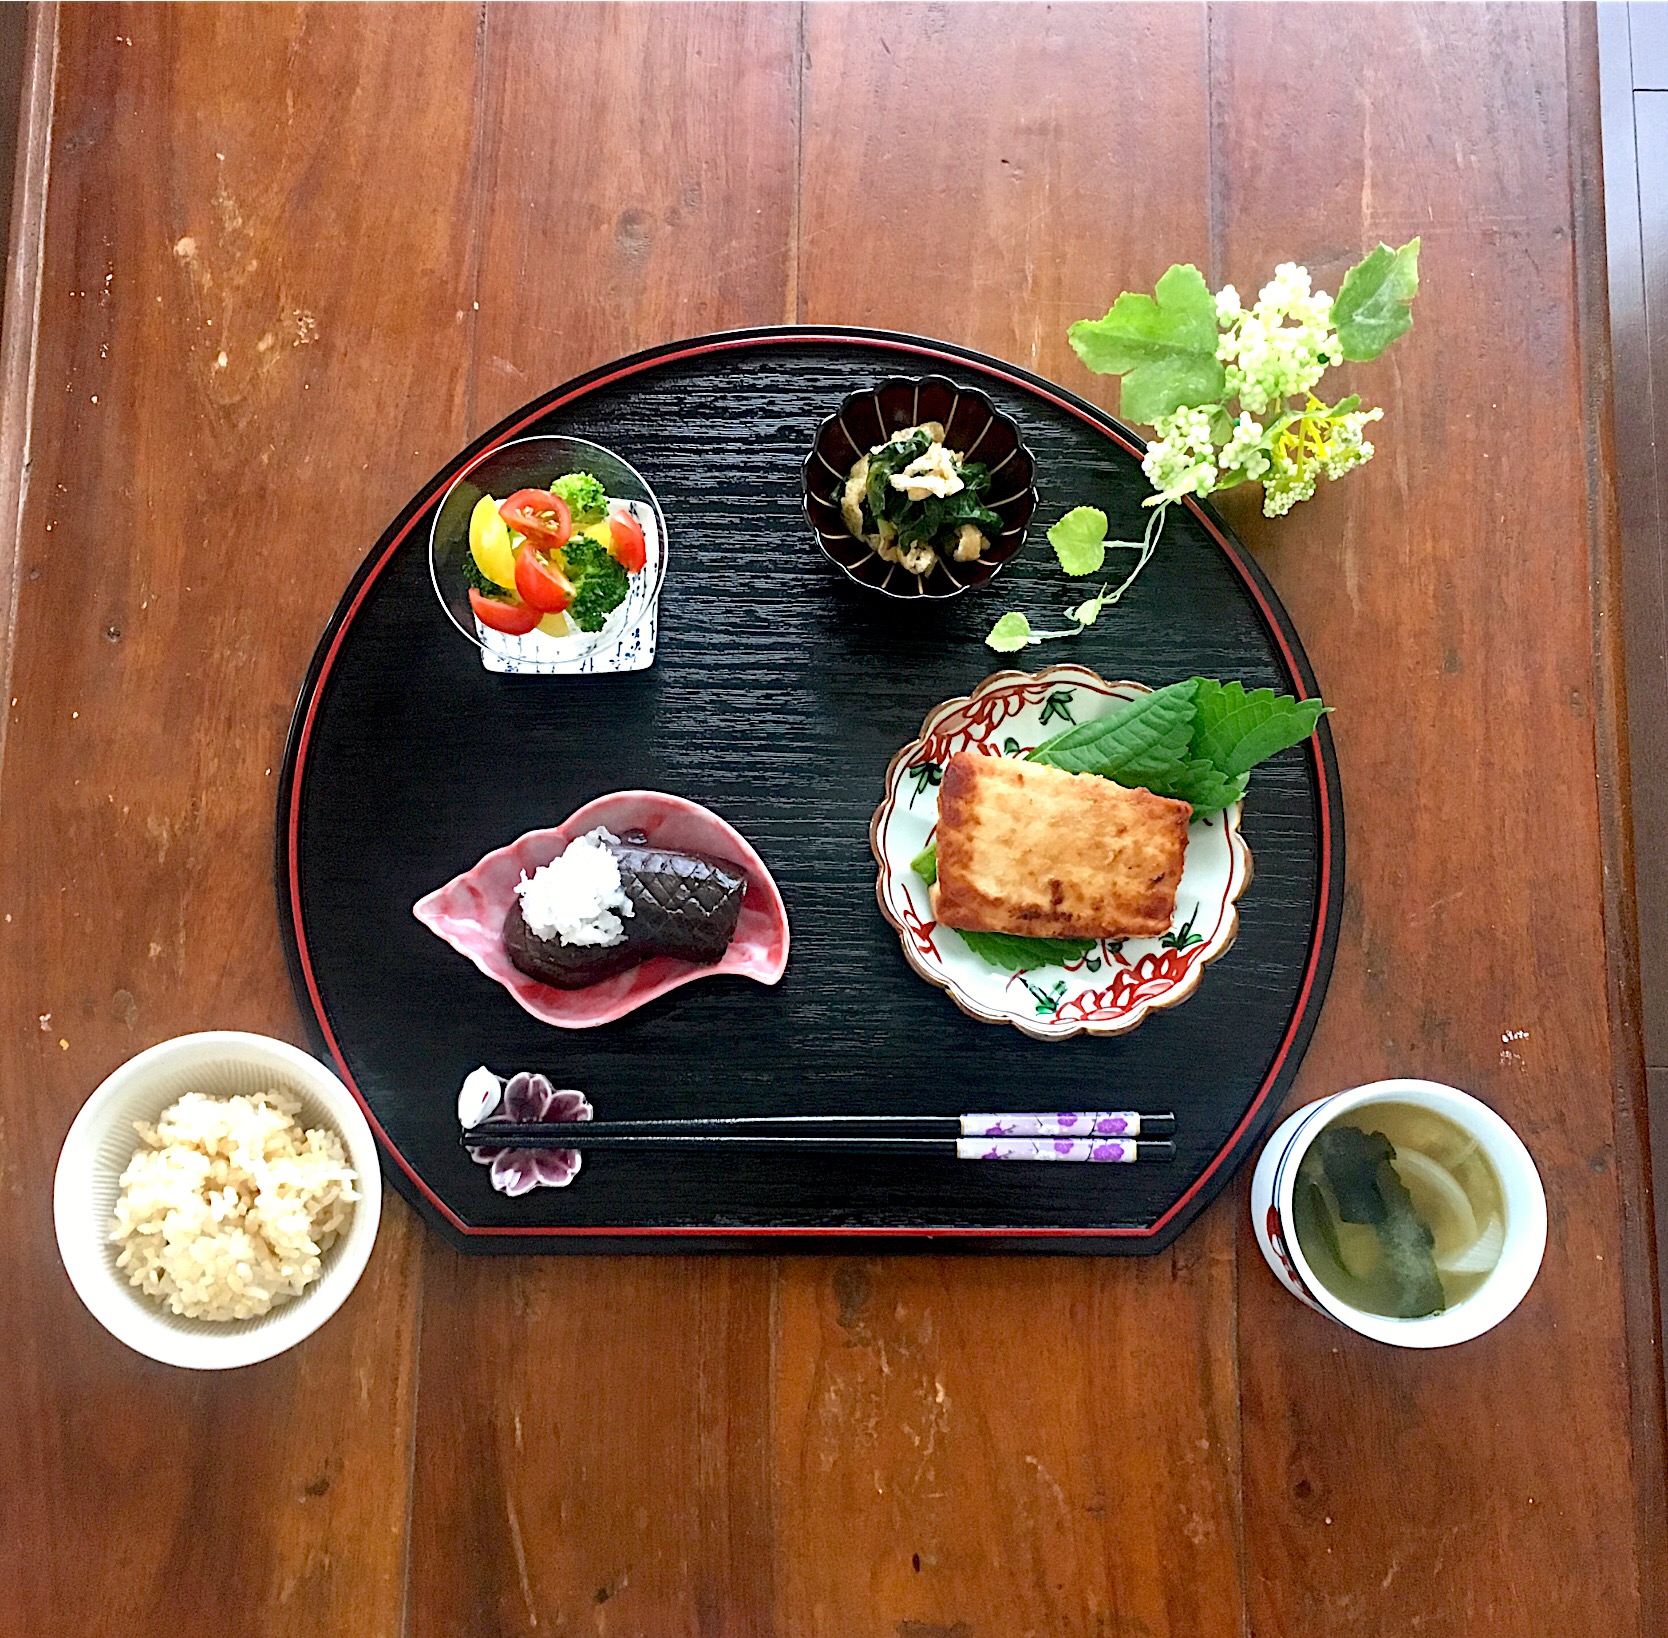 お昼ご飯 ダイエット料理グランプリ19 ヤマサ醤油株式会社